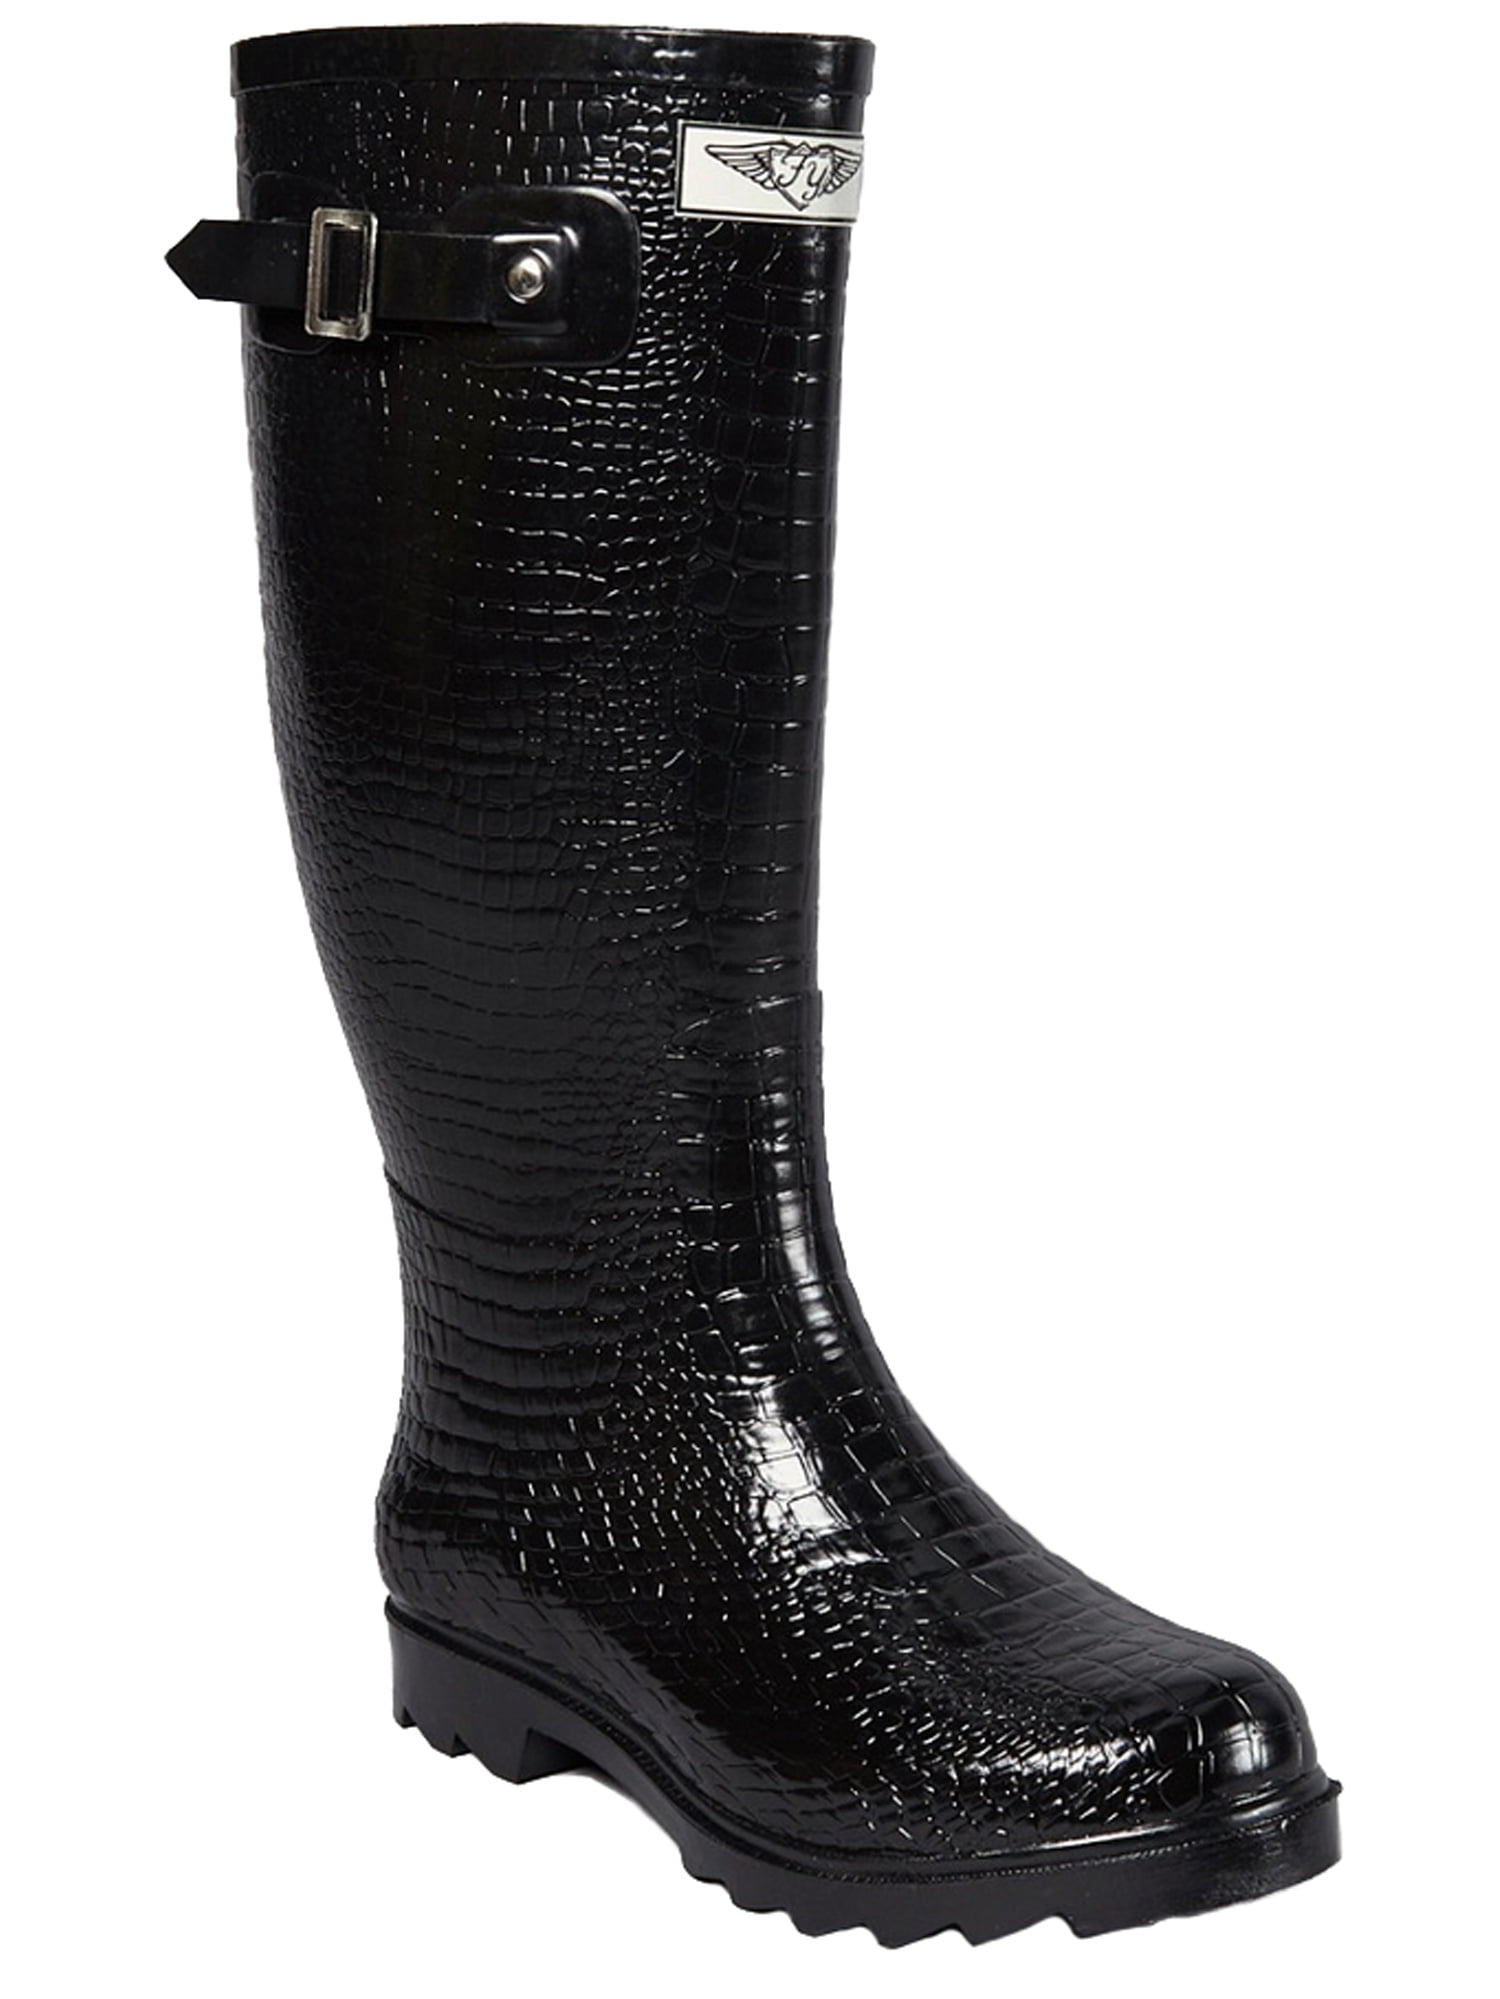 croc rubber boots